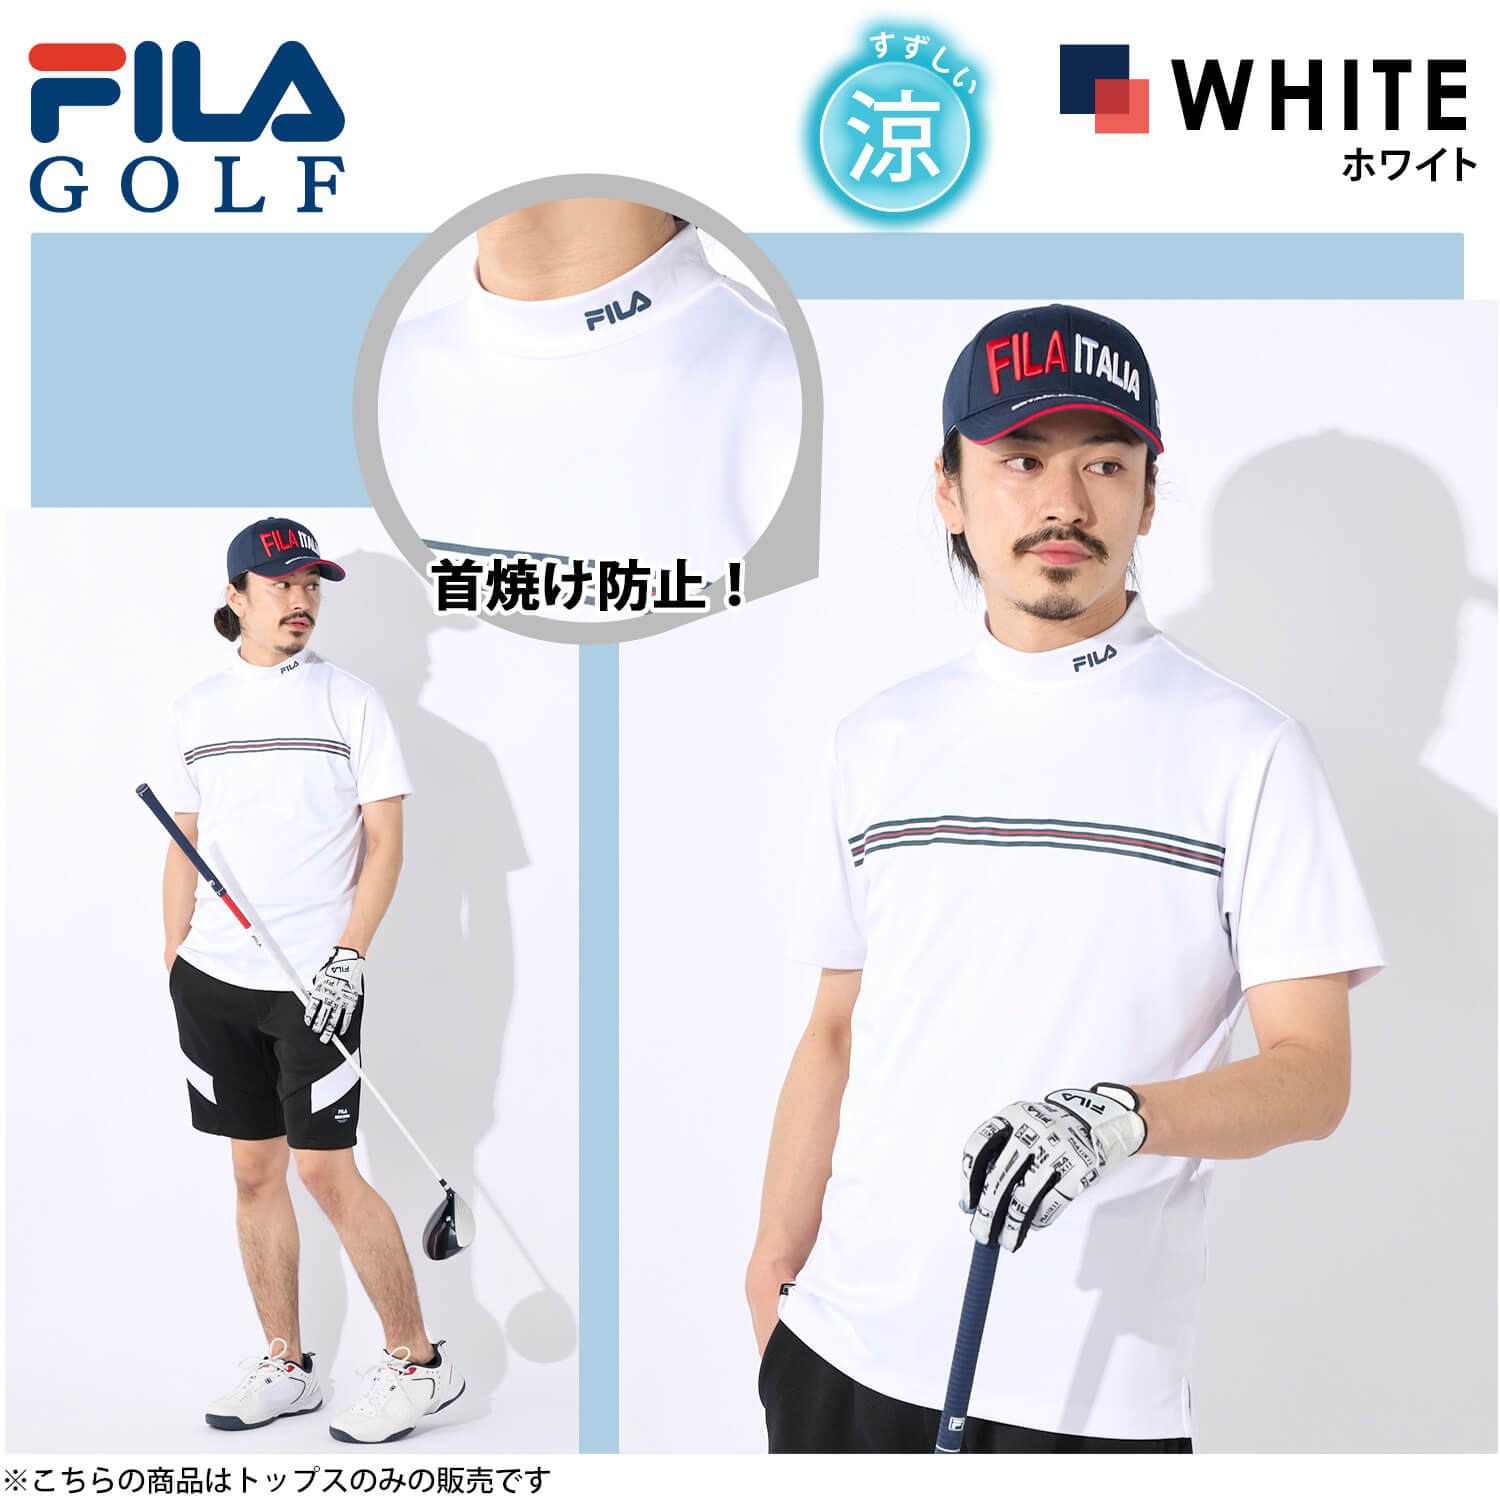 FILA GOLF フィラゴルフ Tシャツ 半袖 メンズ ゴルフウェア 吸汗速乾 ドライ UVカット...